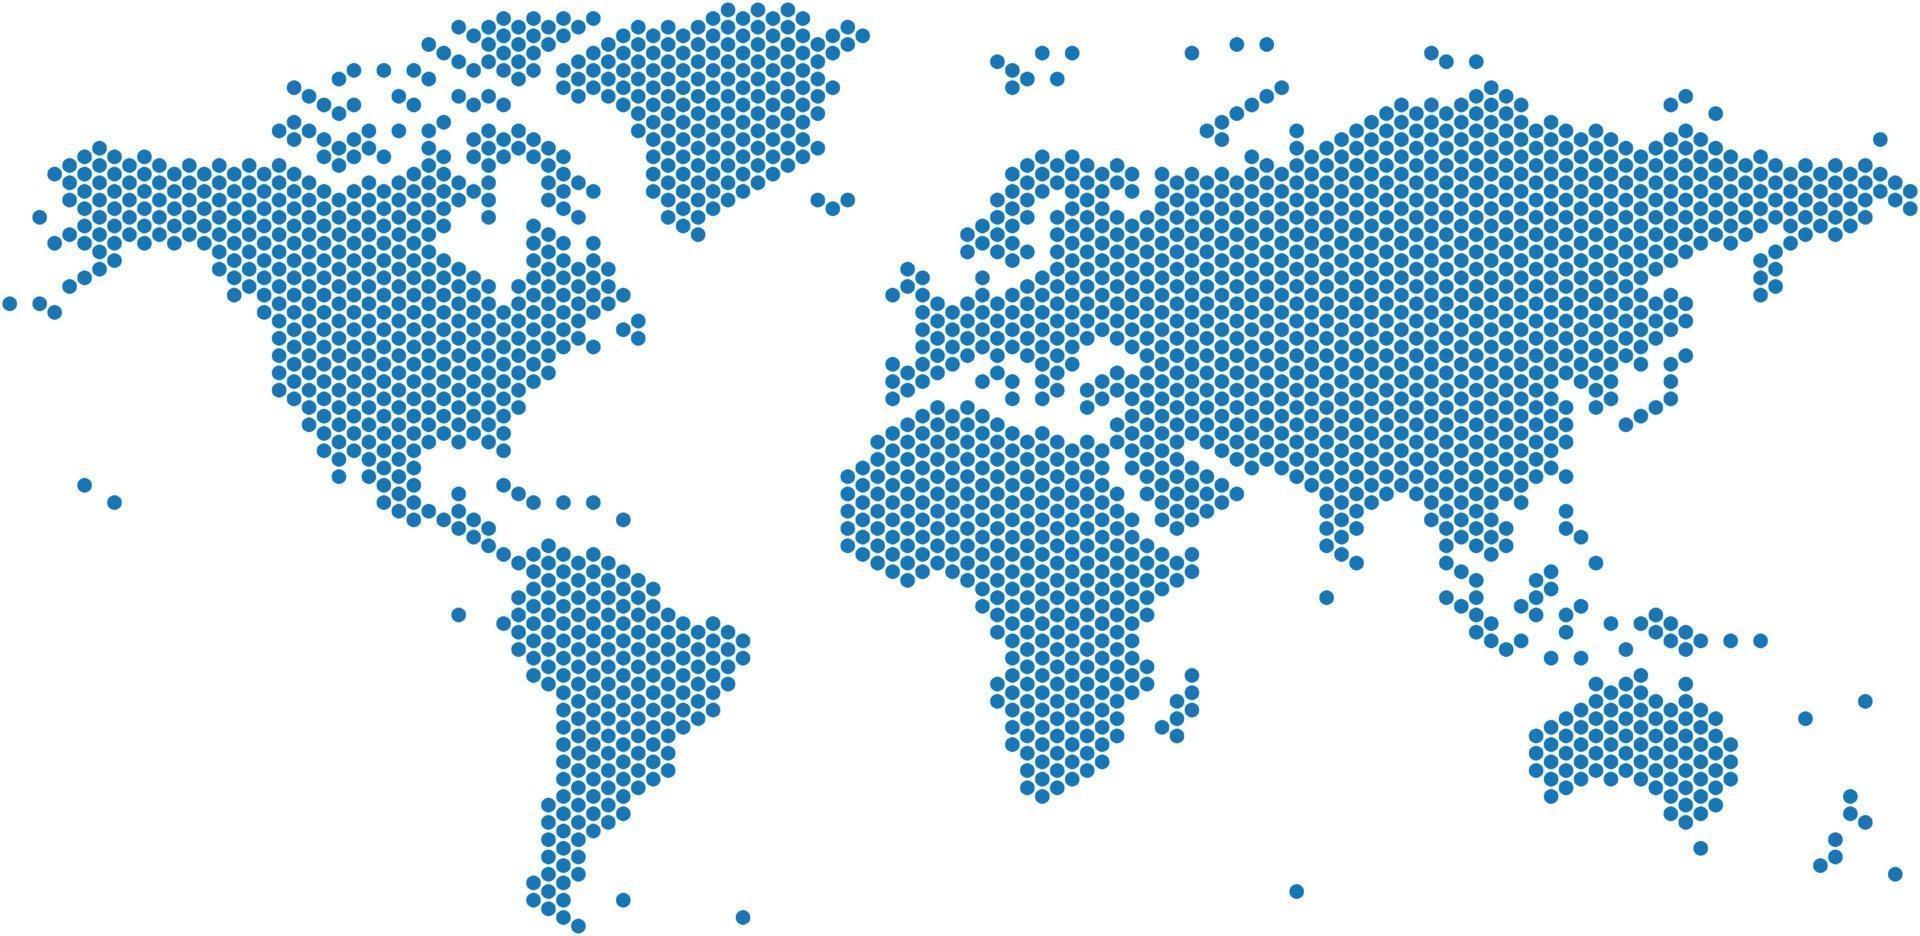 carte du monde de points bleus sur fond blanc vecteur